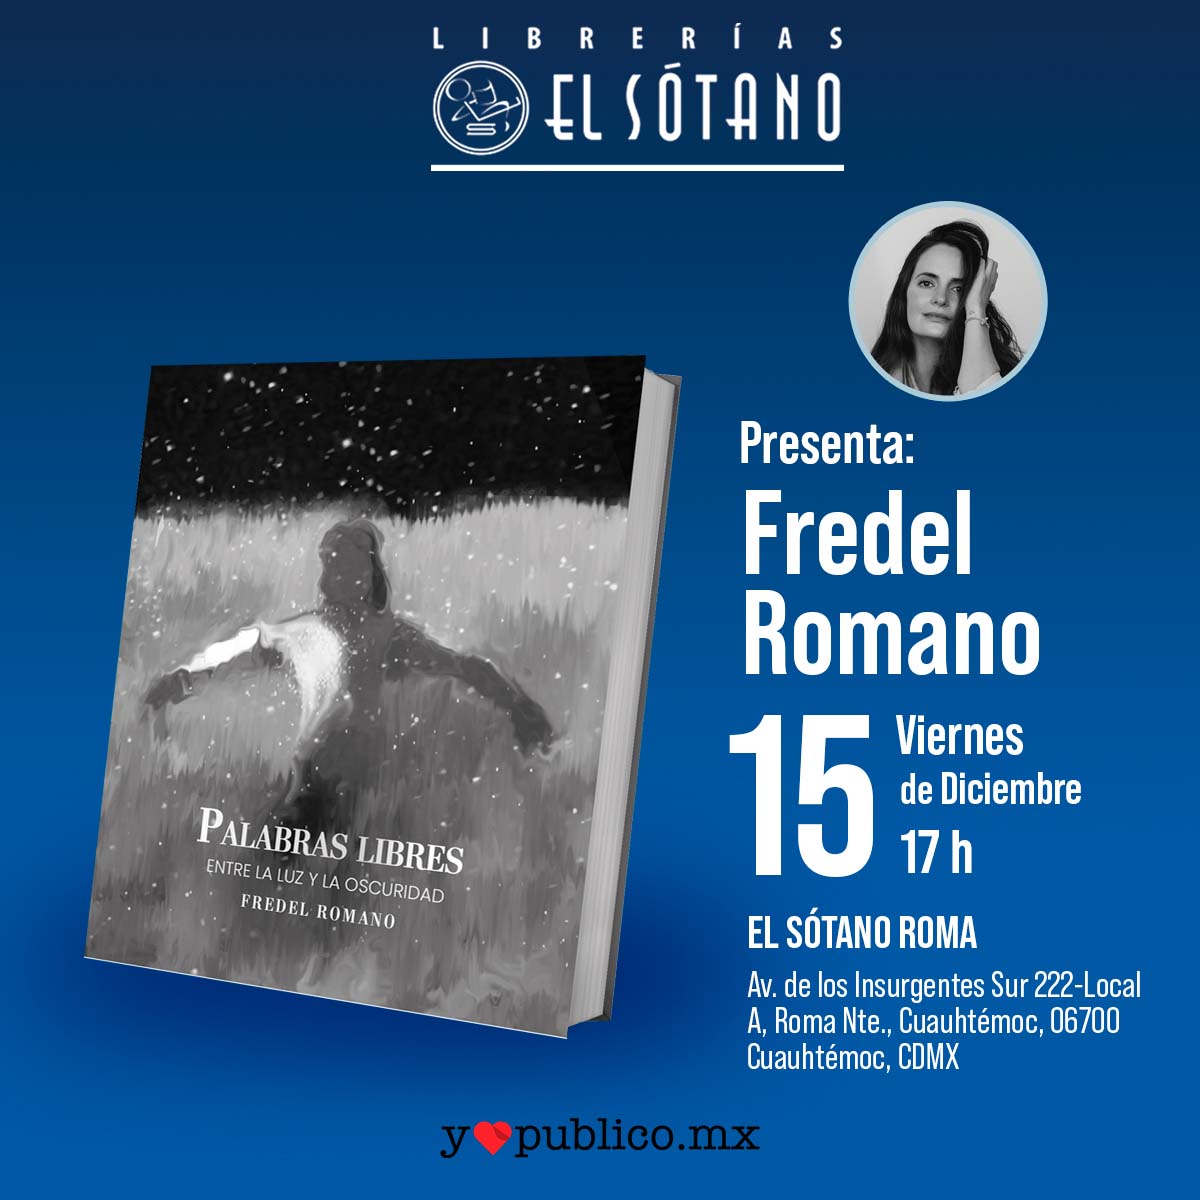 Este viernes 15 de diciembre tendremos la presentación del libro 'Palabras libres' de Fredel Romano 🤩✍️📖
Te esperamos en nuestra librería El Sótano Roma a las 17h  📚🤓
.
.
#MiLibreríaMisLibros #LibreríasElSótano #LeerEsEsencial #books #escritor #AmoLeer